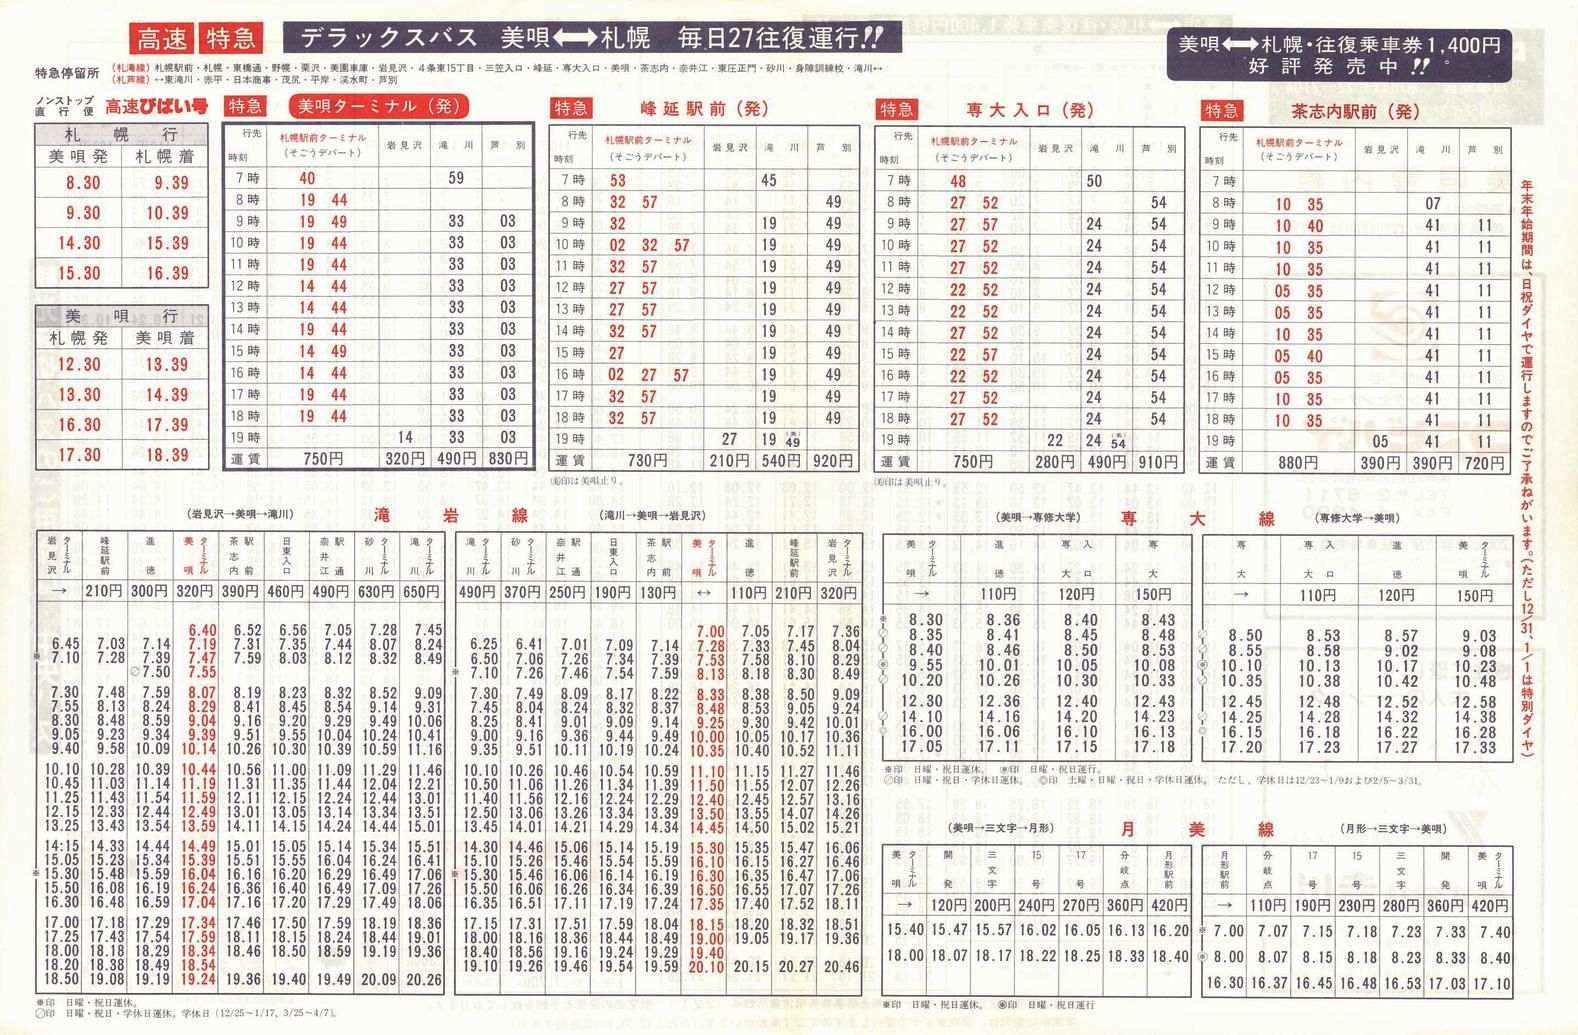 1987-12-01改正_北海道中央バス(空知)_美唄管内線時刻表裏面